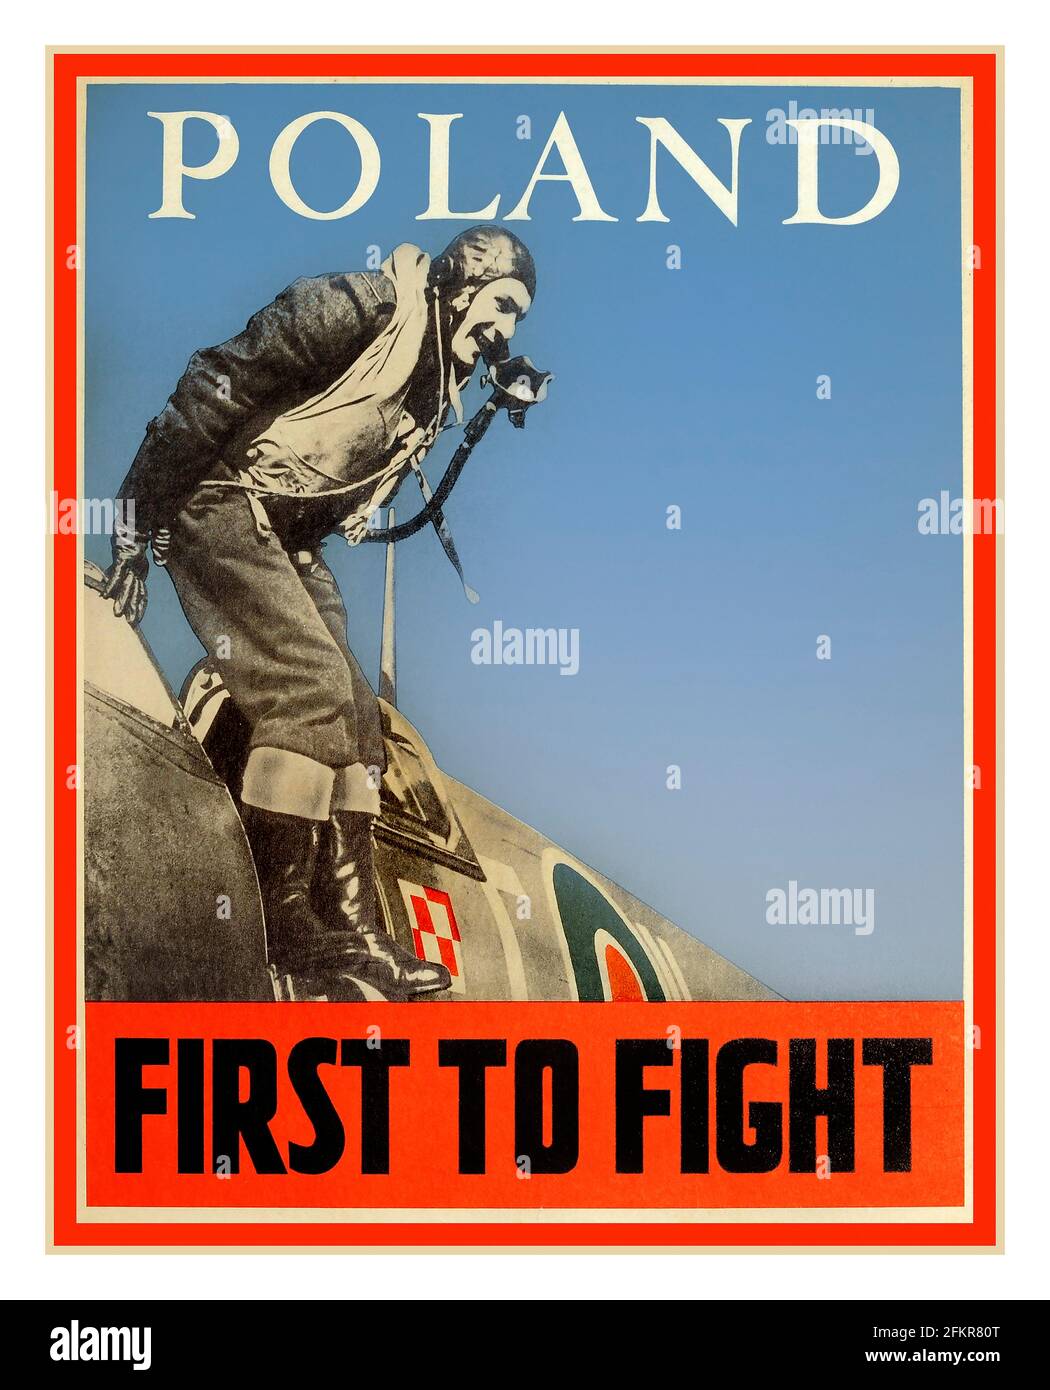 WW2 Propaganda UK Poster 'POLAND FIRST TO FIGHT' 1940's. Il contributo dei piloti polacchi che volano con gli aerei Spitfire La Gran Bretagna con la RAF nella seconda guerra mondiale Foto Stock